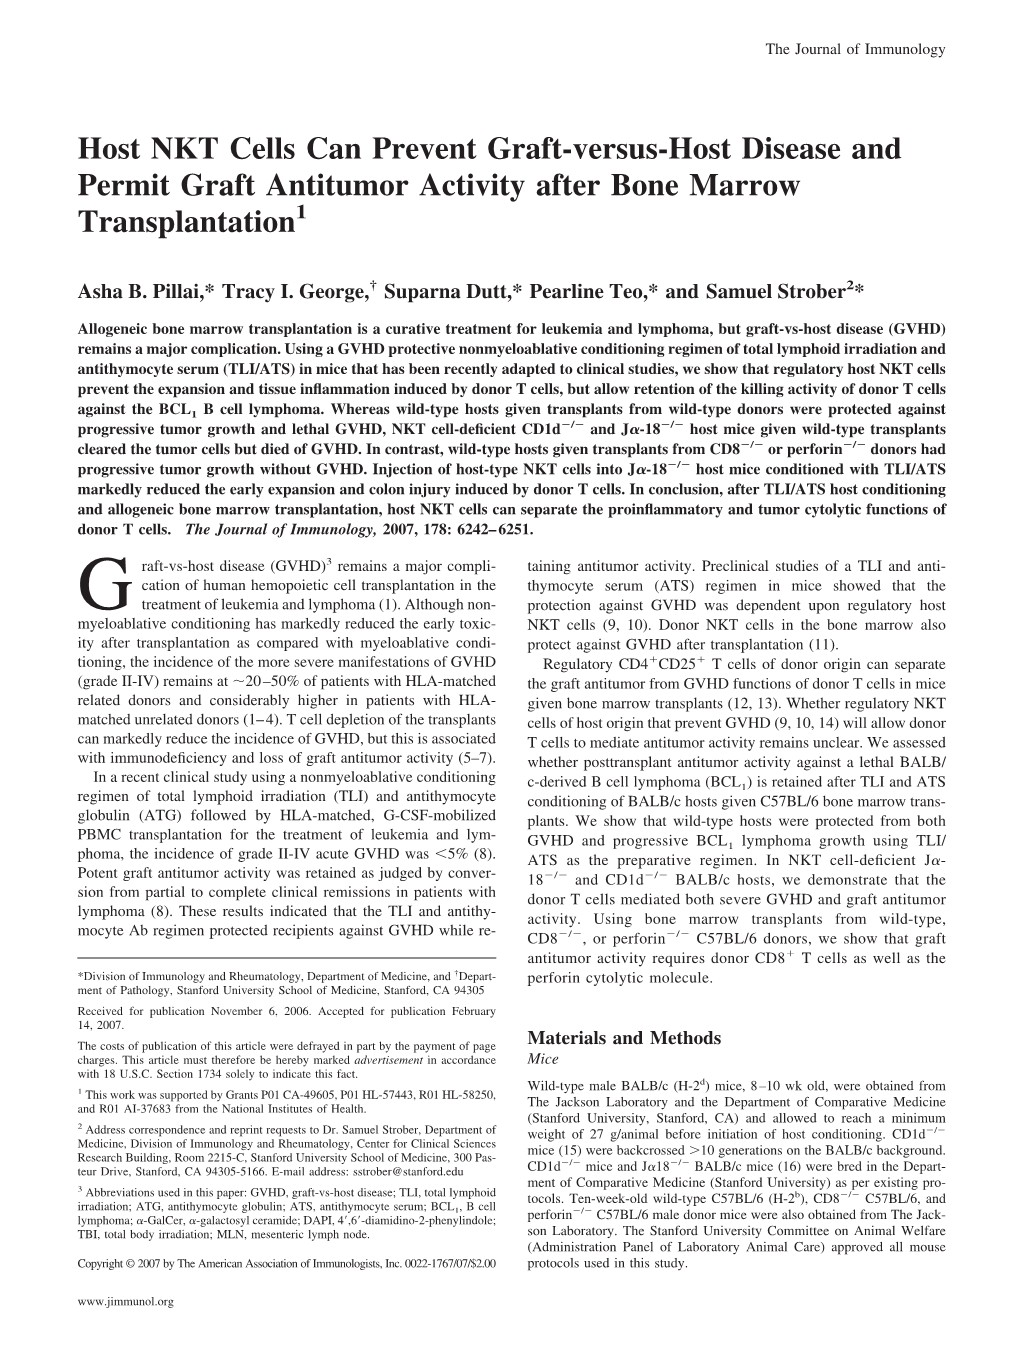 Transplantation Antitumor Activity After Bone Marrow Graft-Versus-Host